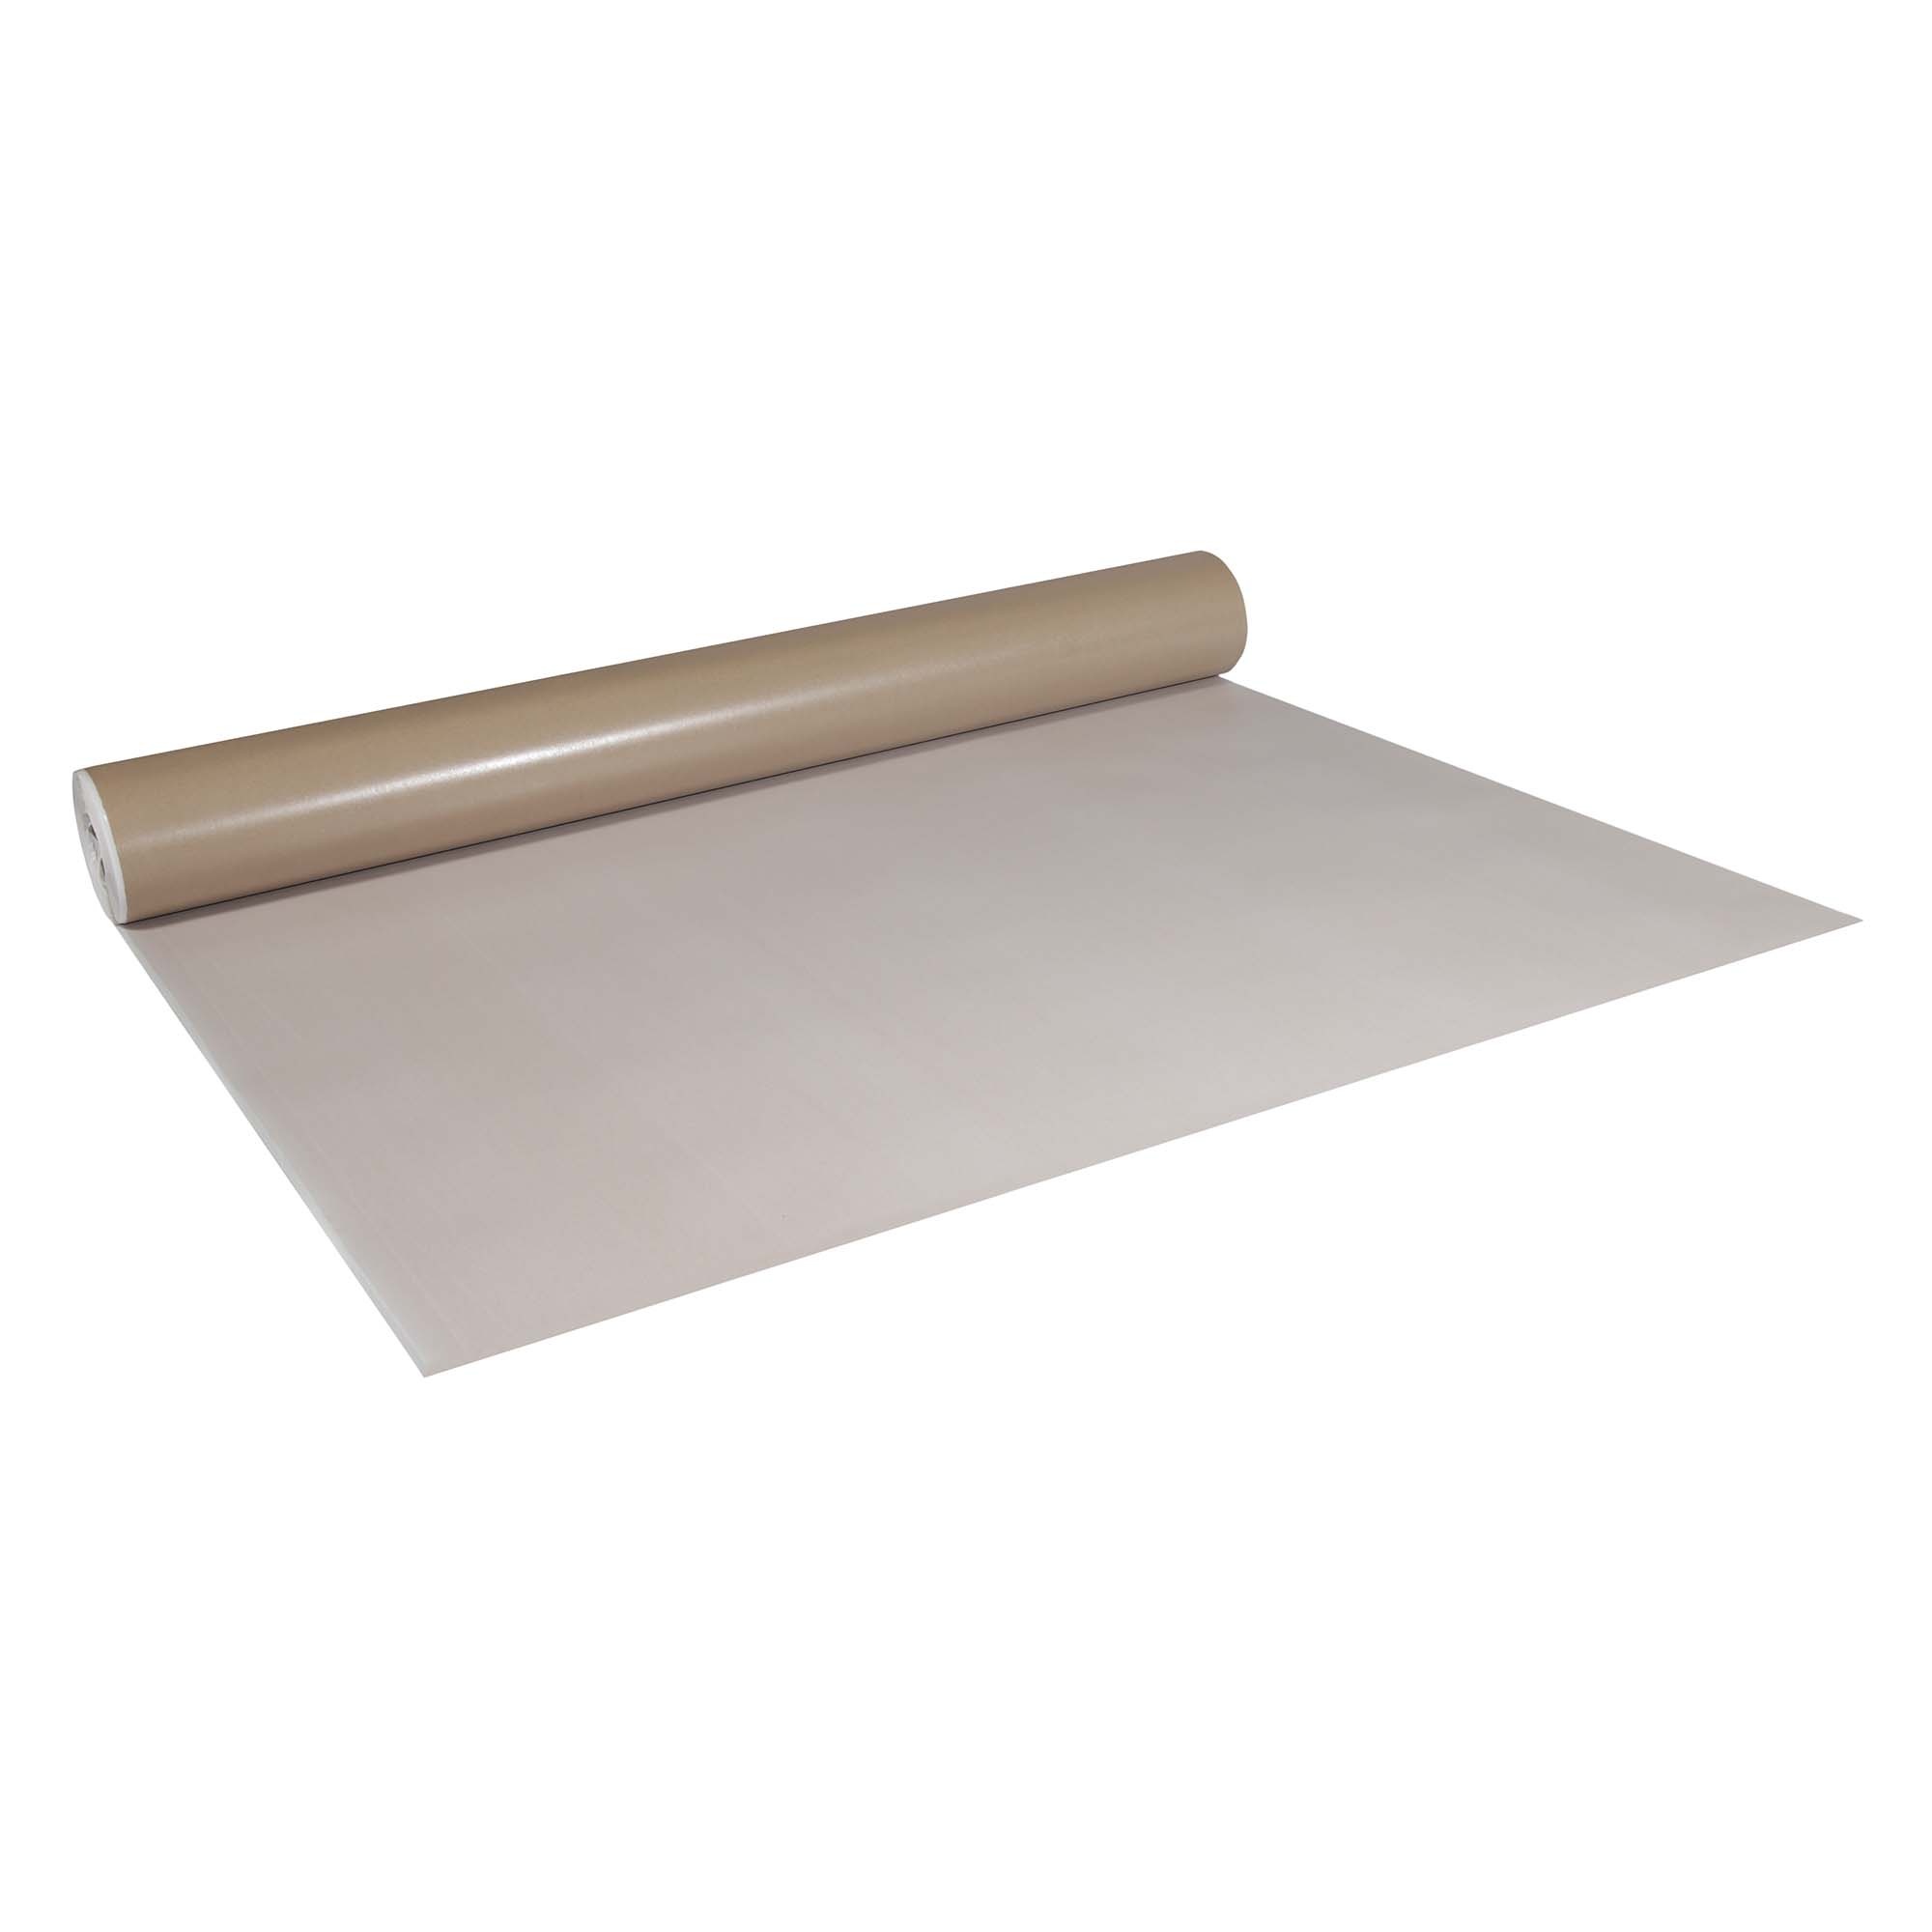 Abdeckpappe Milchtütenpapier weiß/braun 1 x 55 m beidseitig PE Folie beschichtet 250 g/m²